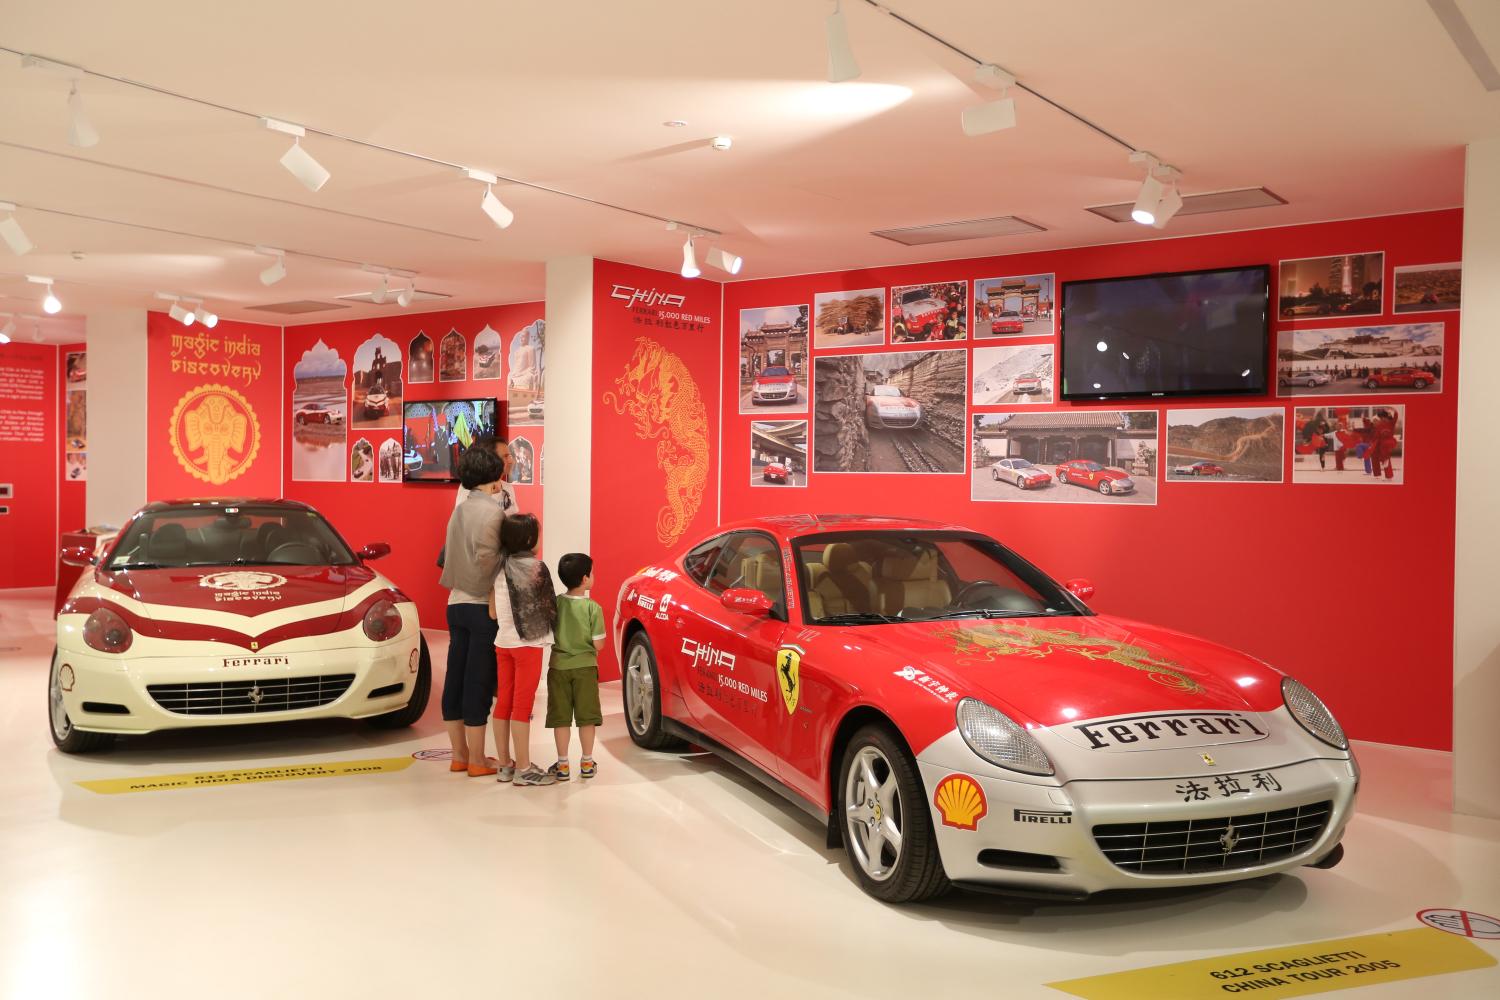 New Museo Ferrari opens its doors, permanent F1 displays